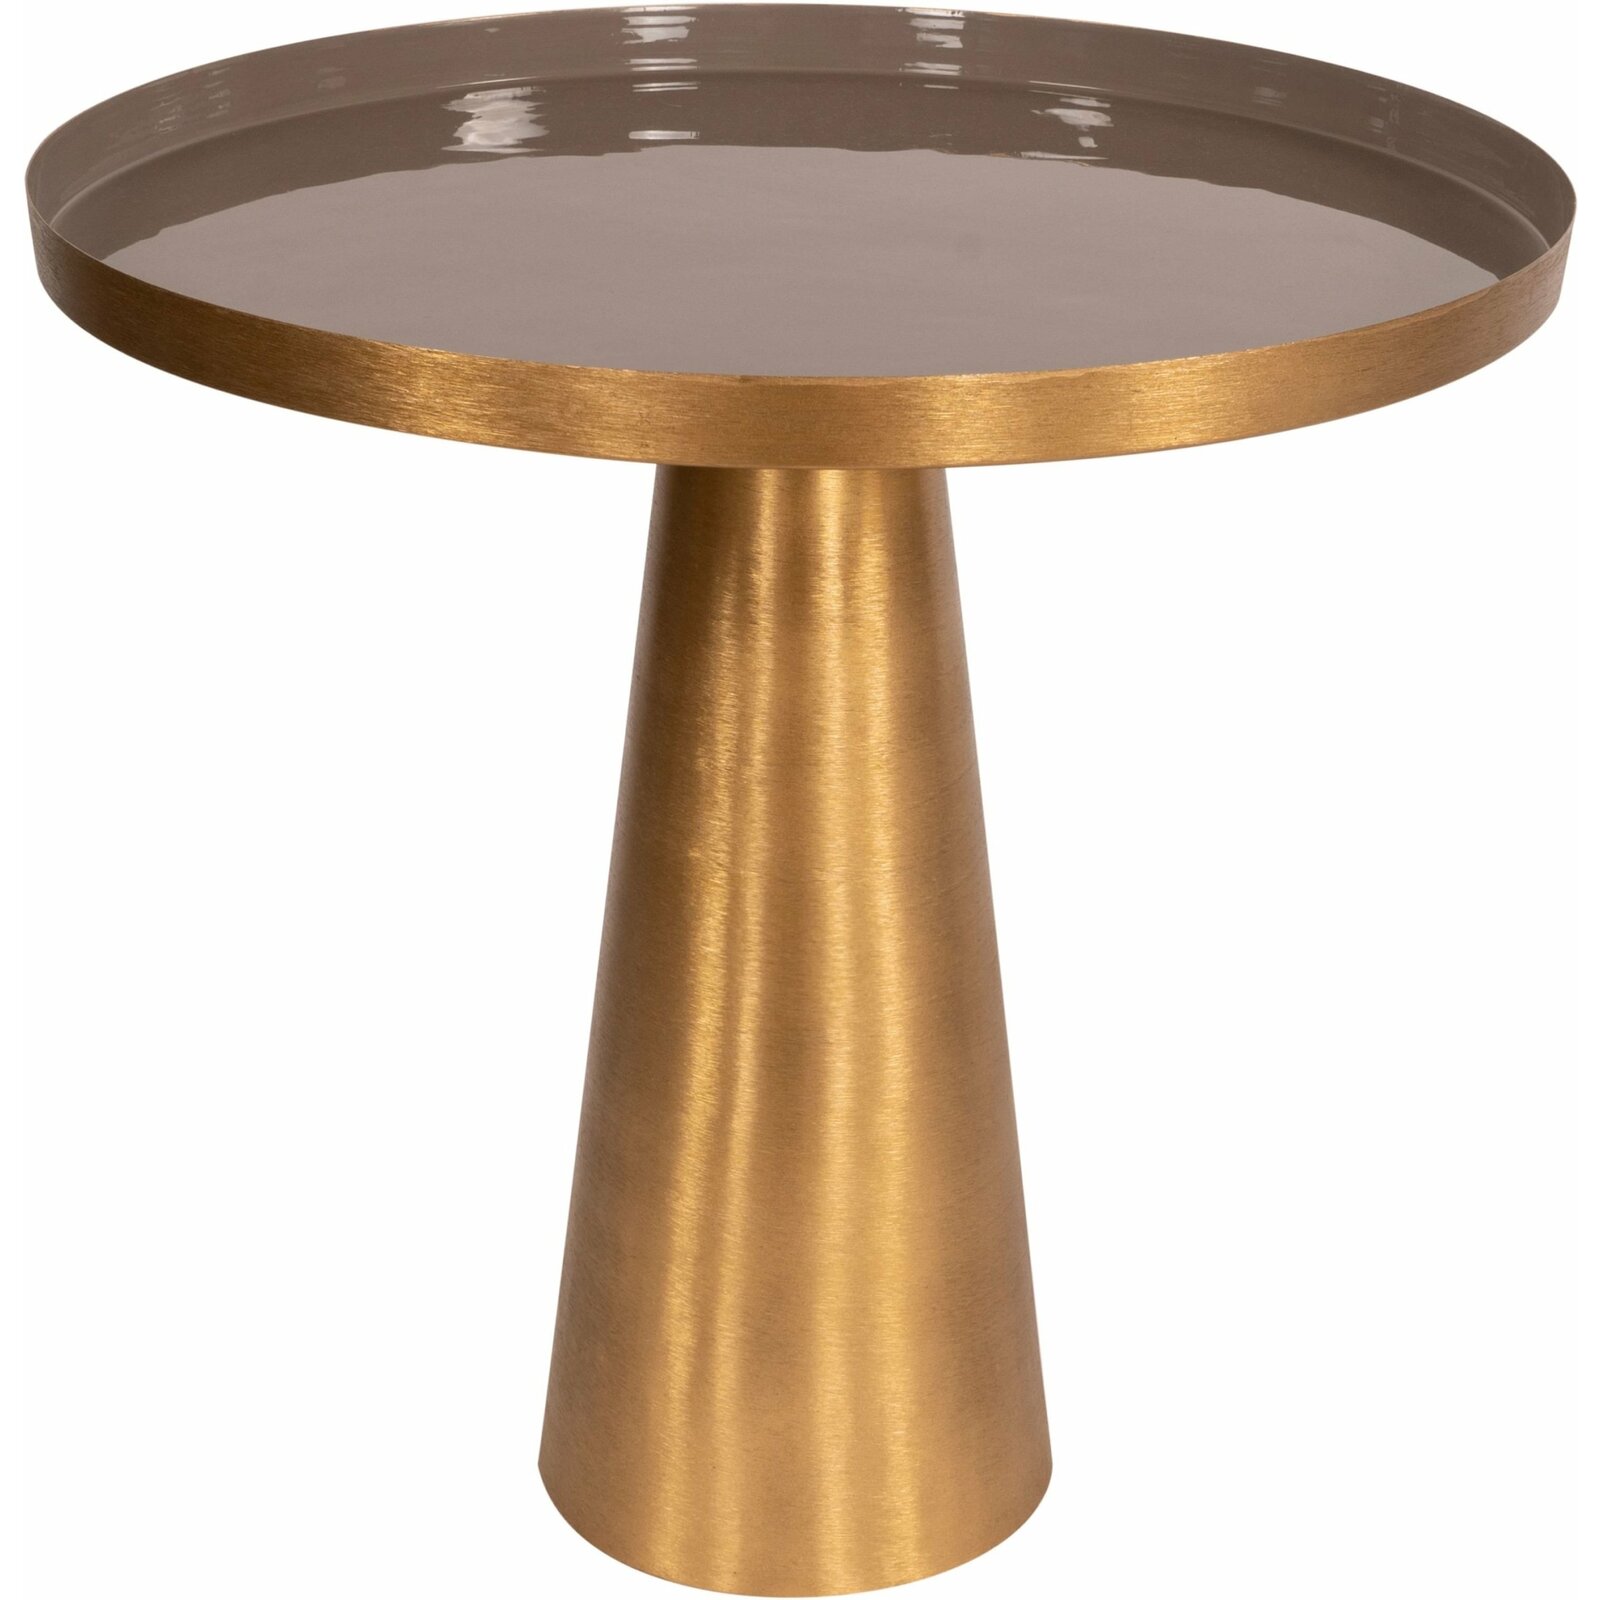 Table d’appoint embase ronde doré plateau gris taupe d51cm